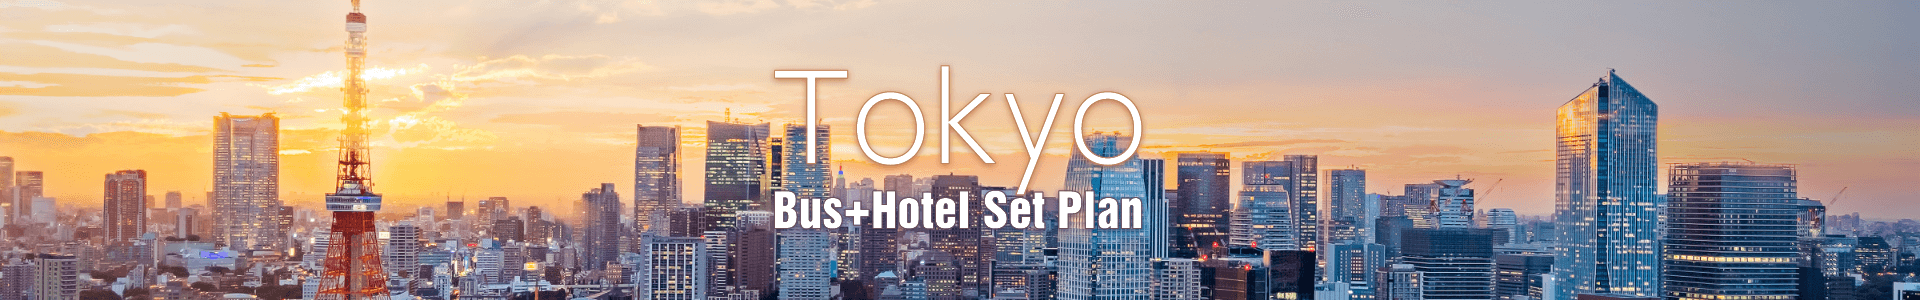 Tokyo Bus Hotel Set Plan